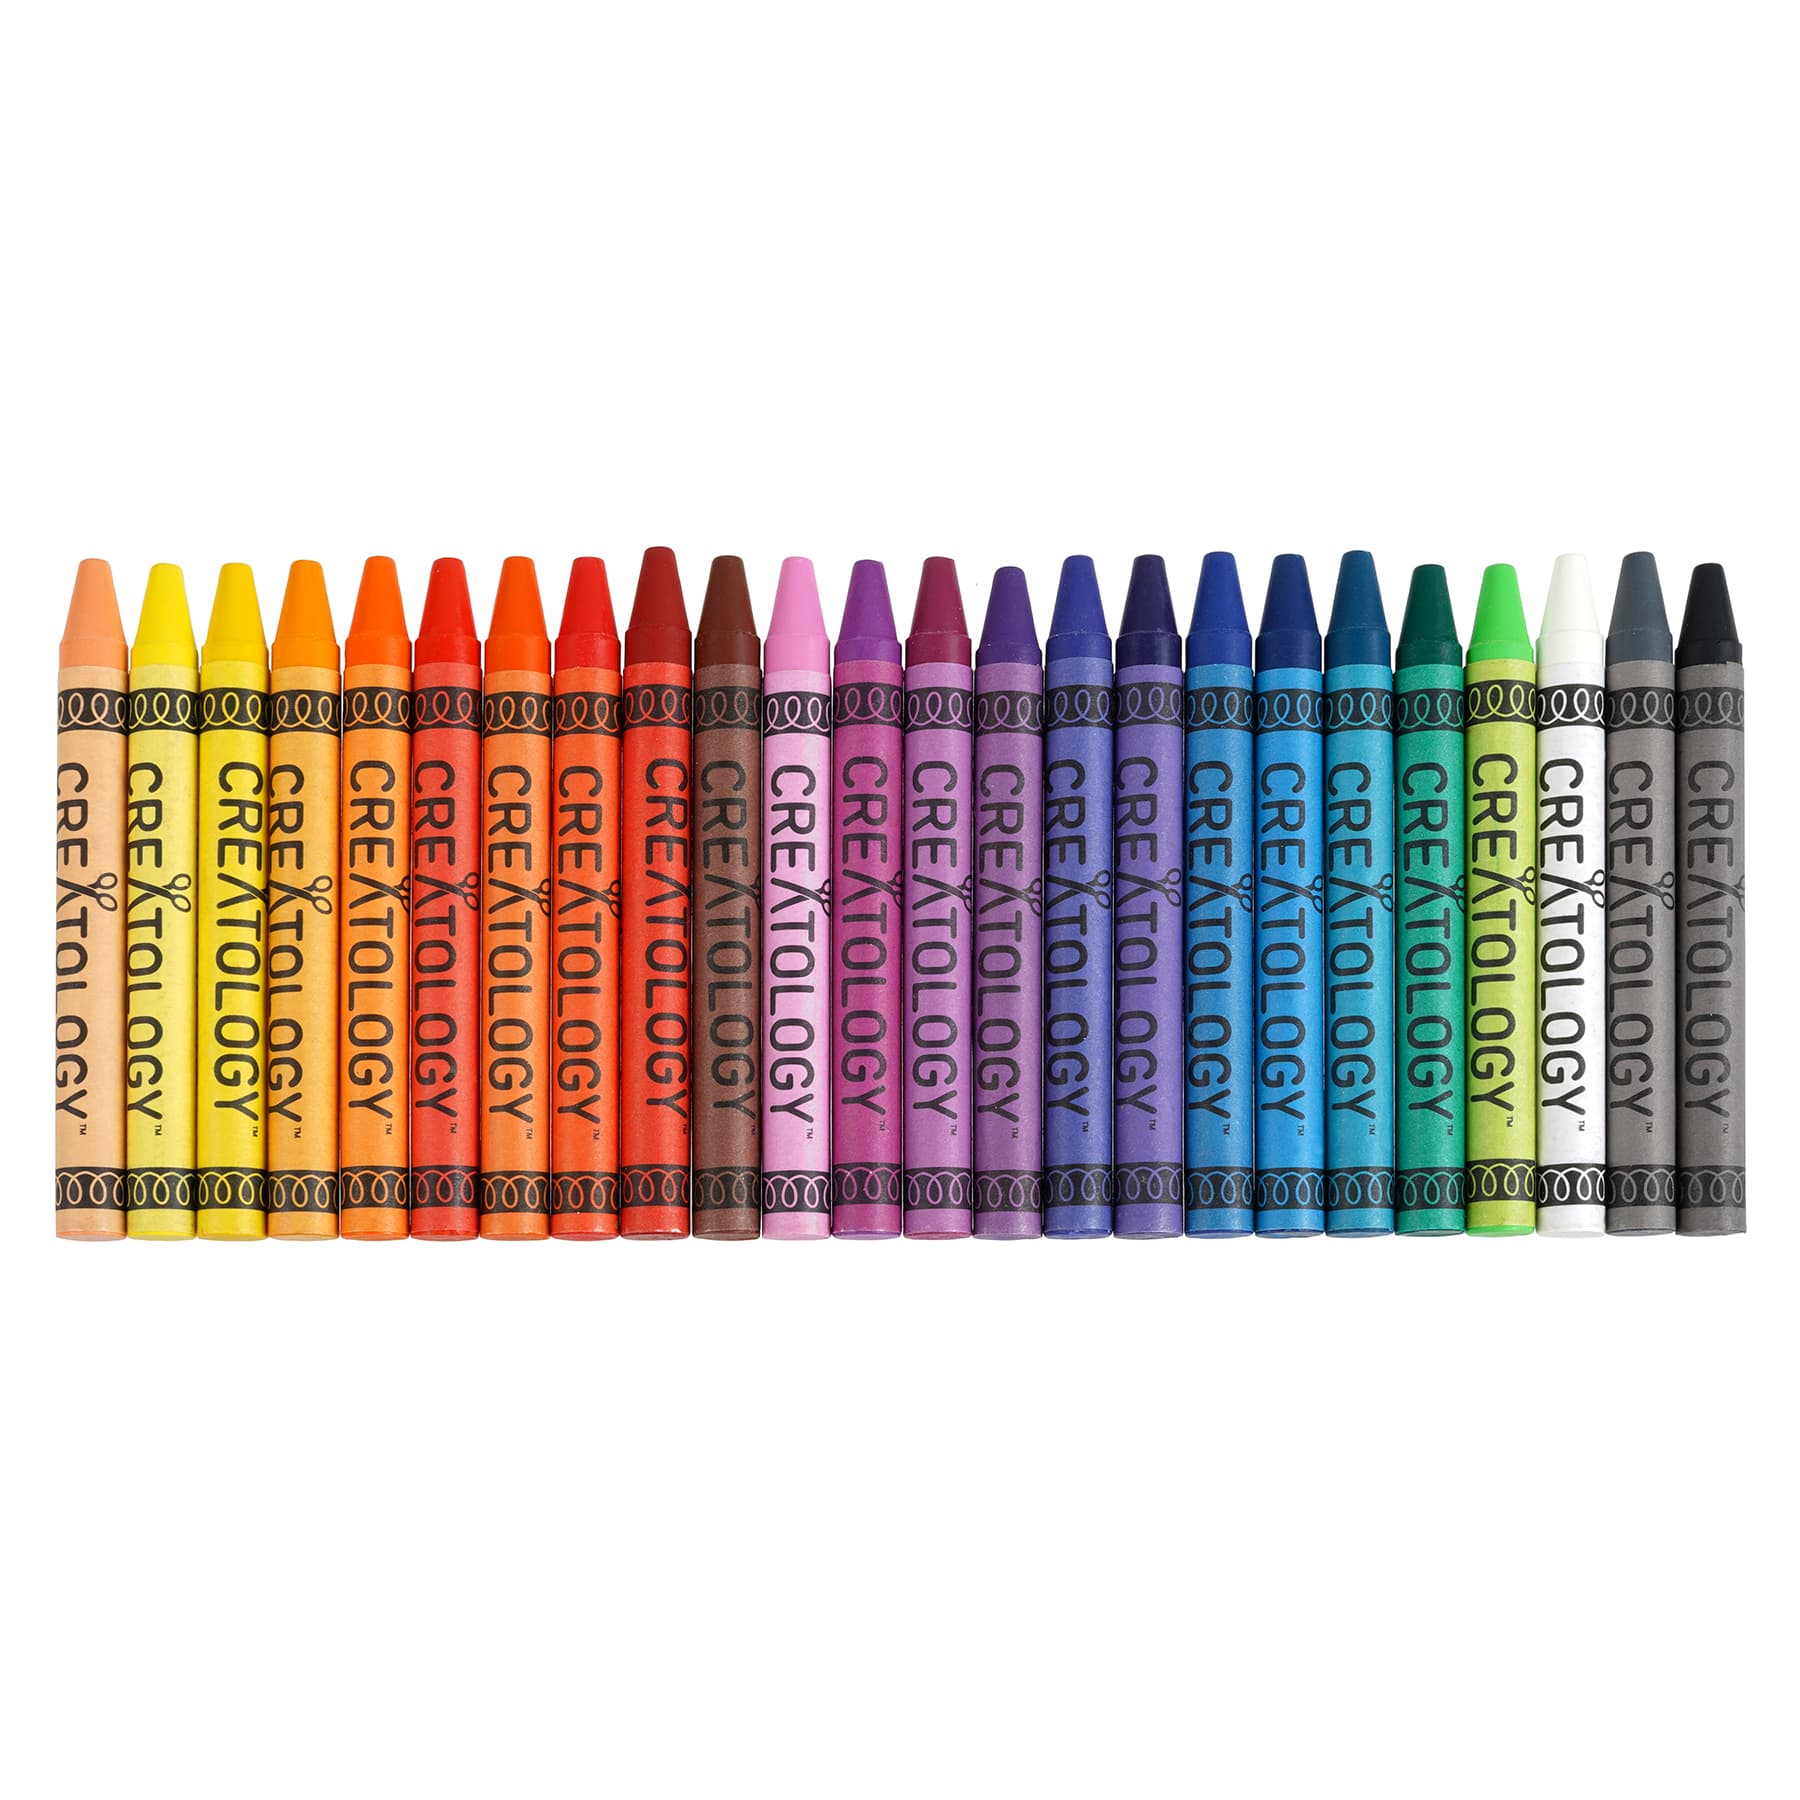 Kids PARTY FAVOR Crayons // Diamond Party Favor Crayons // Crayon